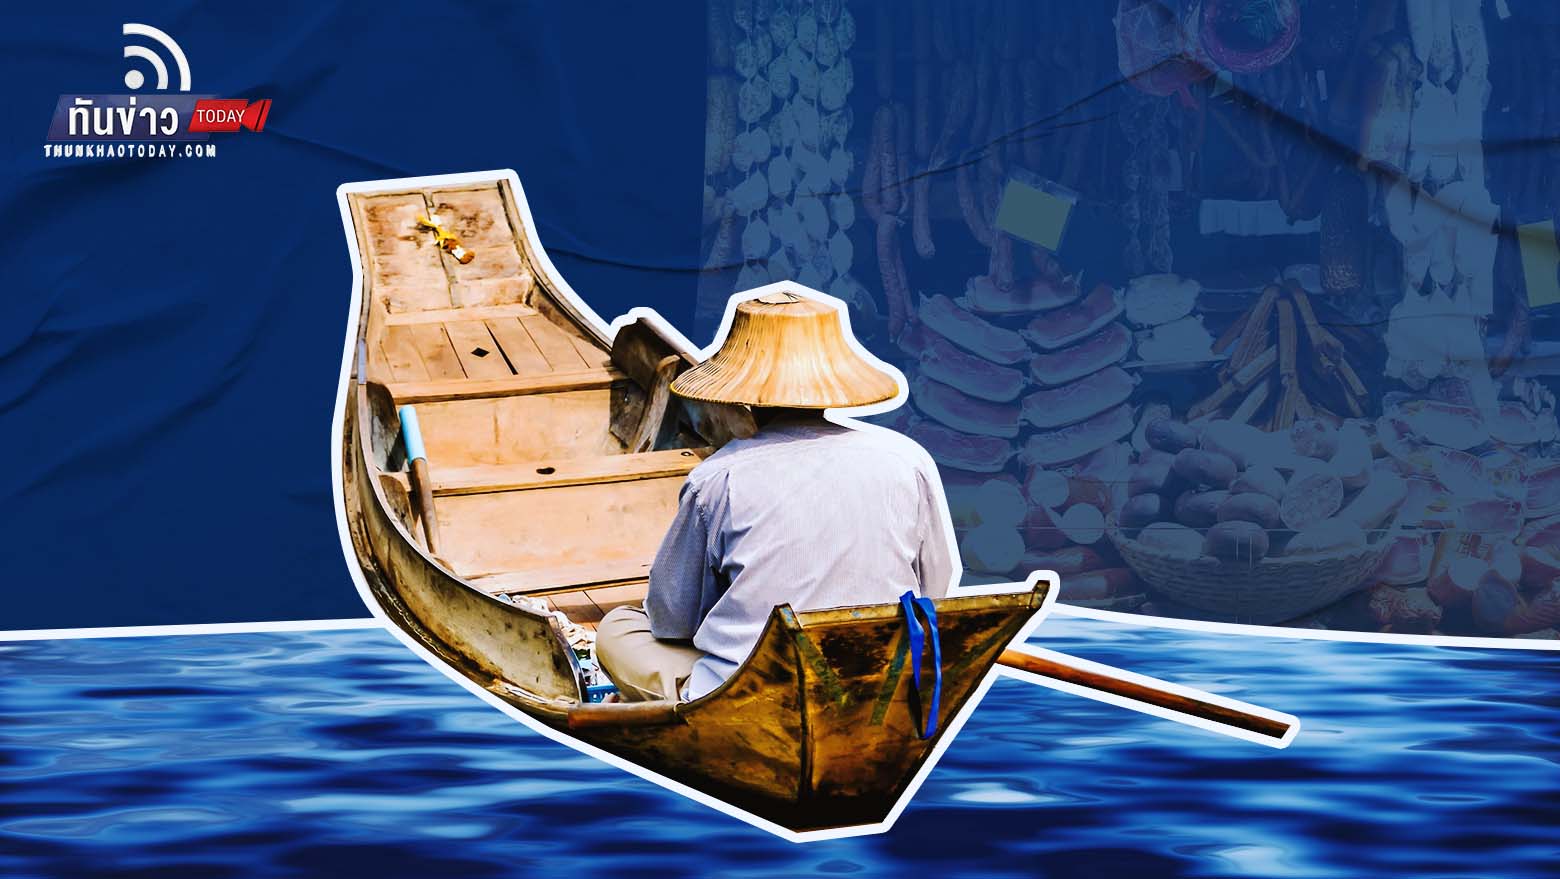 ชวนเที่ยว “10 ตลาดบก 6 ตลาดน้ำ” แหล่งท่องเที่ยวชุมชน สืบสานวัฒนธรรมไทย